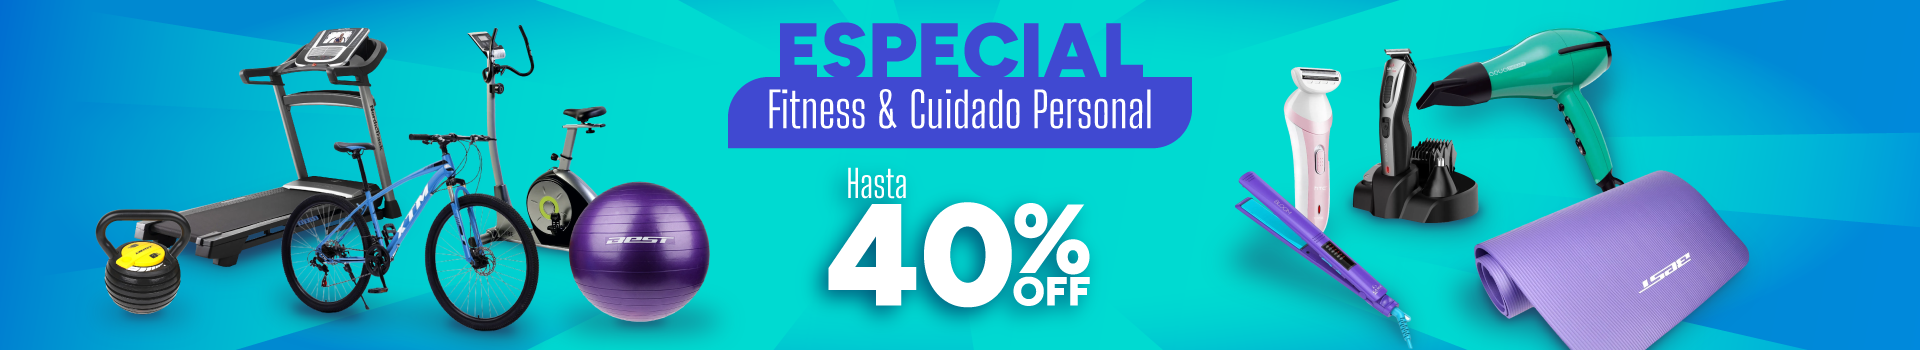 Especial Fitness y Cuidado Personal - Hasta 40% OFF